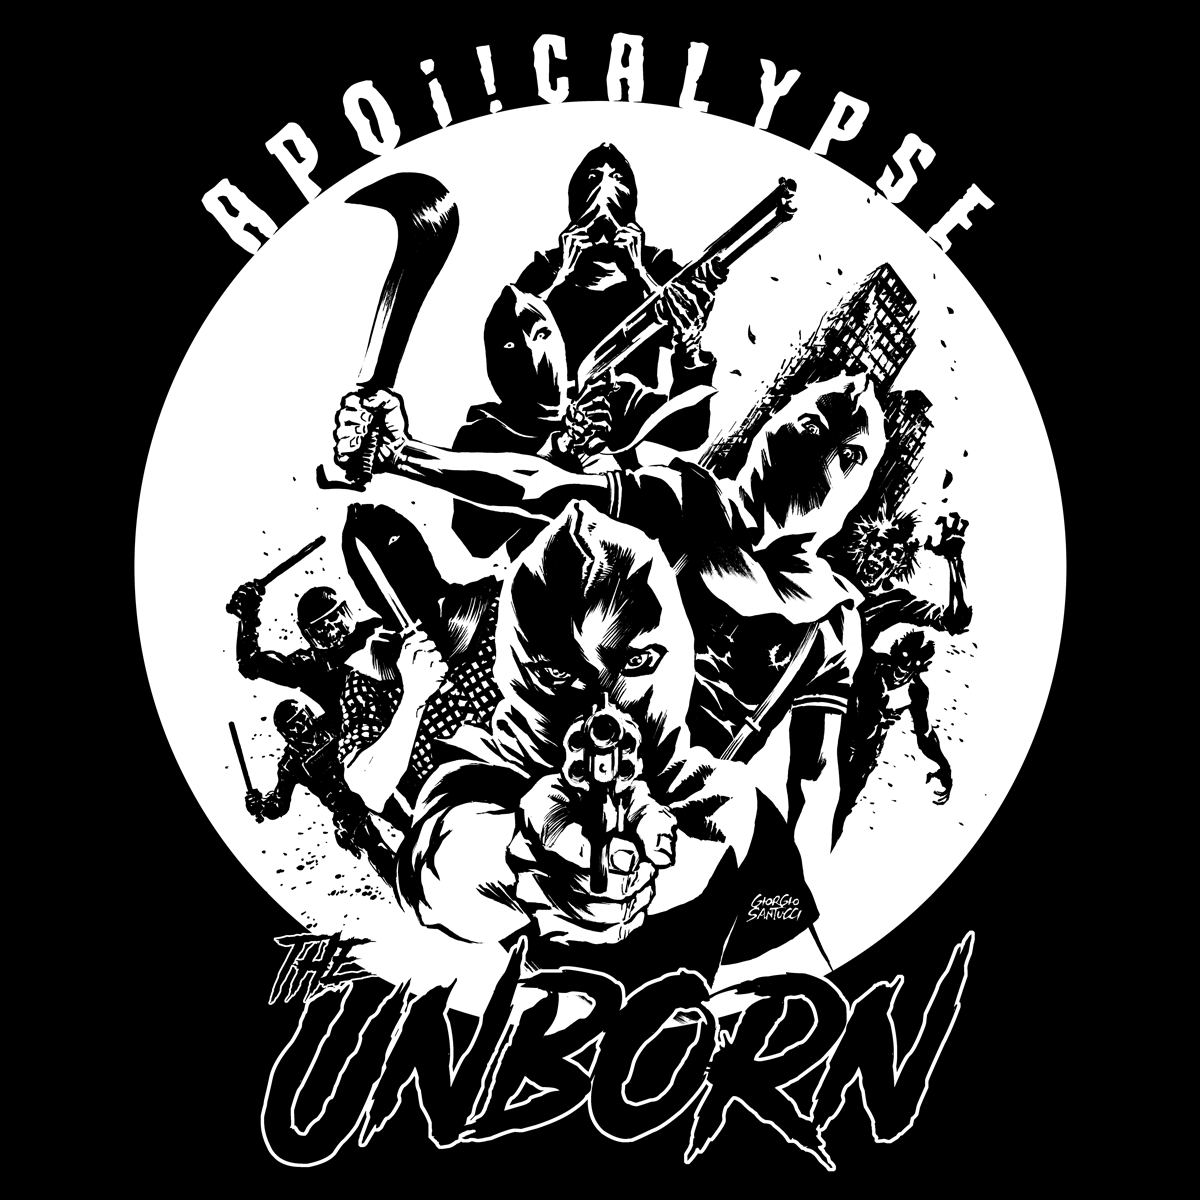 The Unborn "Apoi!calypse" 7" EP